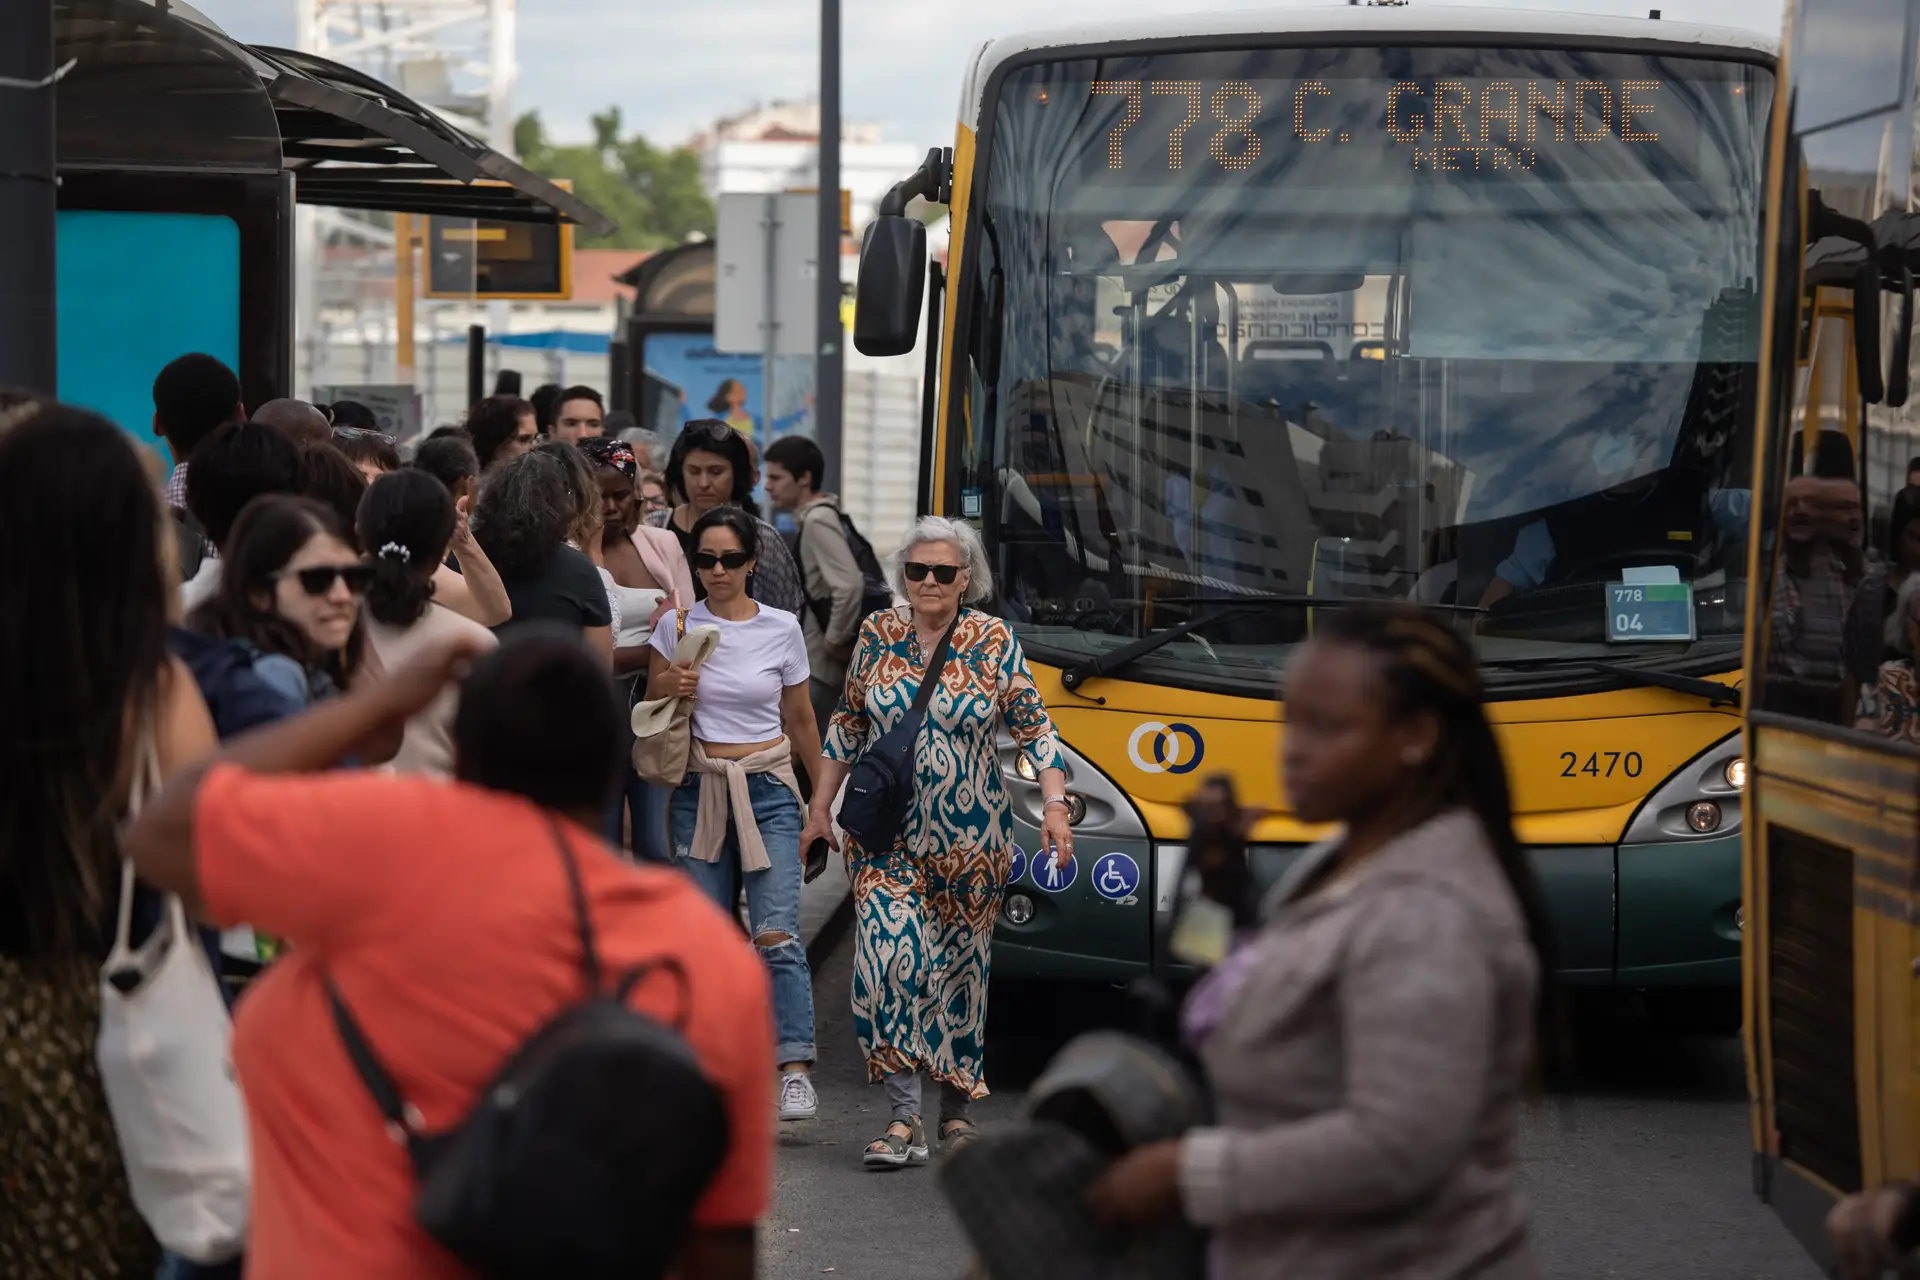 “Um cenário absolutamente caótico”: intervenções no metro de Lisboa causam transtornos no Campo Grande